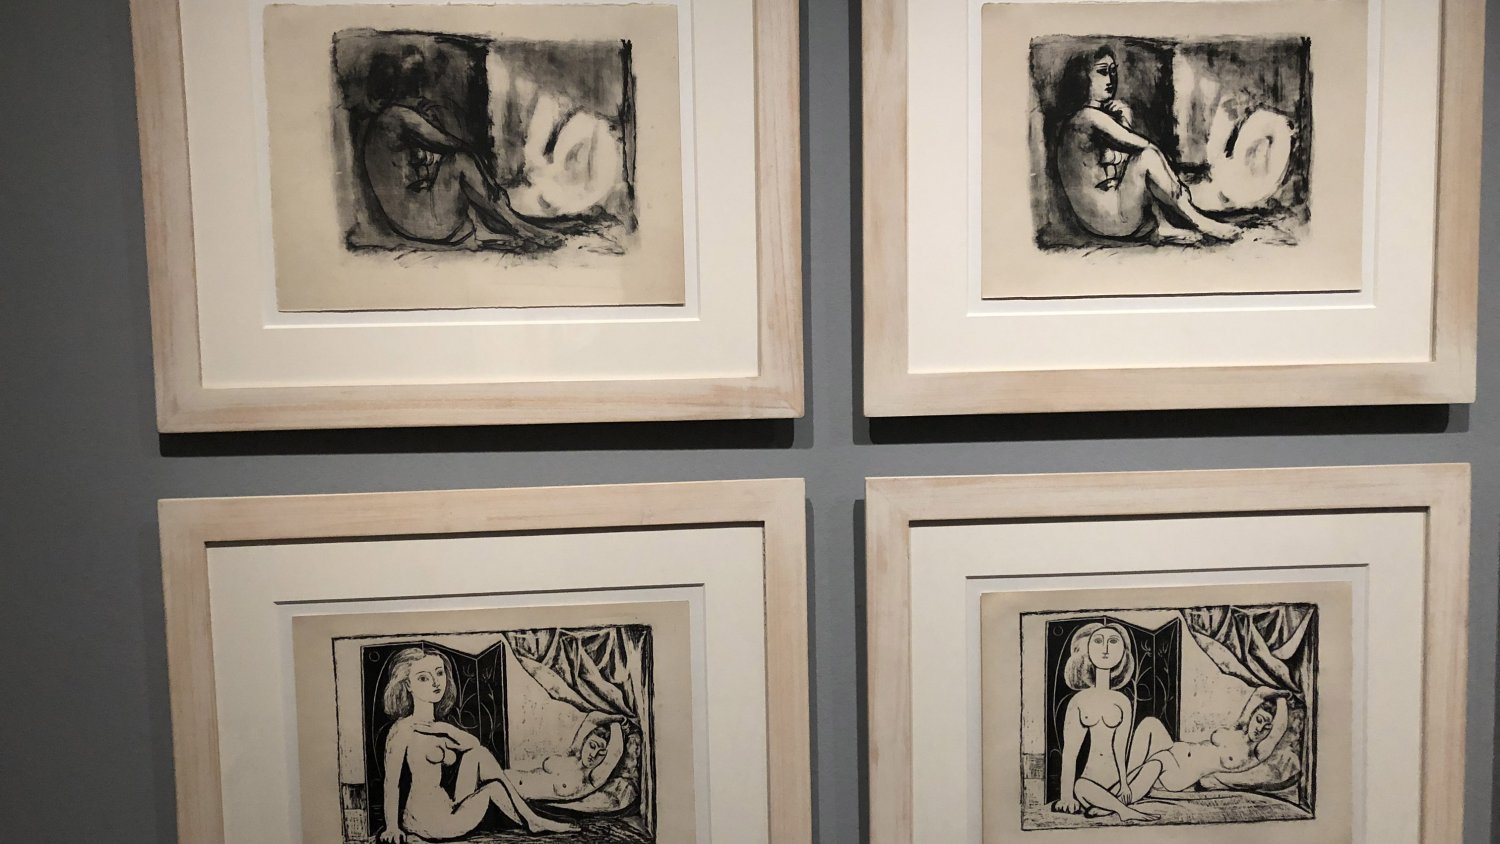 La Fundación Picasso Museo Natal presenta la exposición 'Picasso. El deseo atrapado', con obras gráficas del pintor malagueño